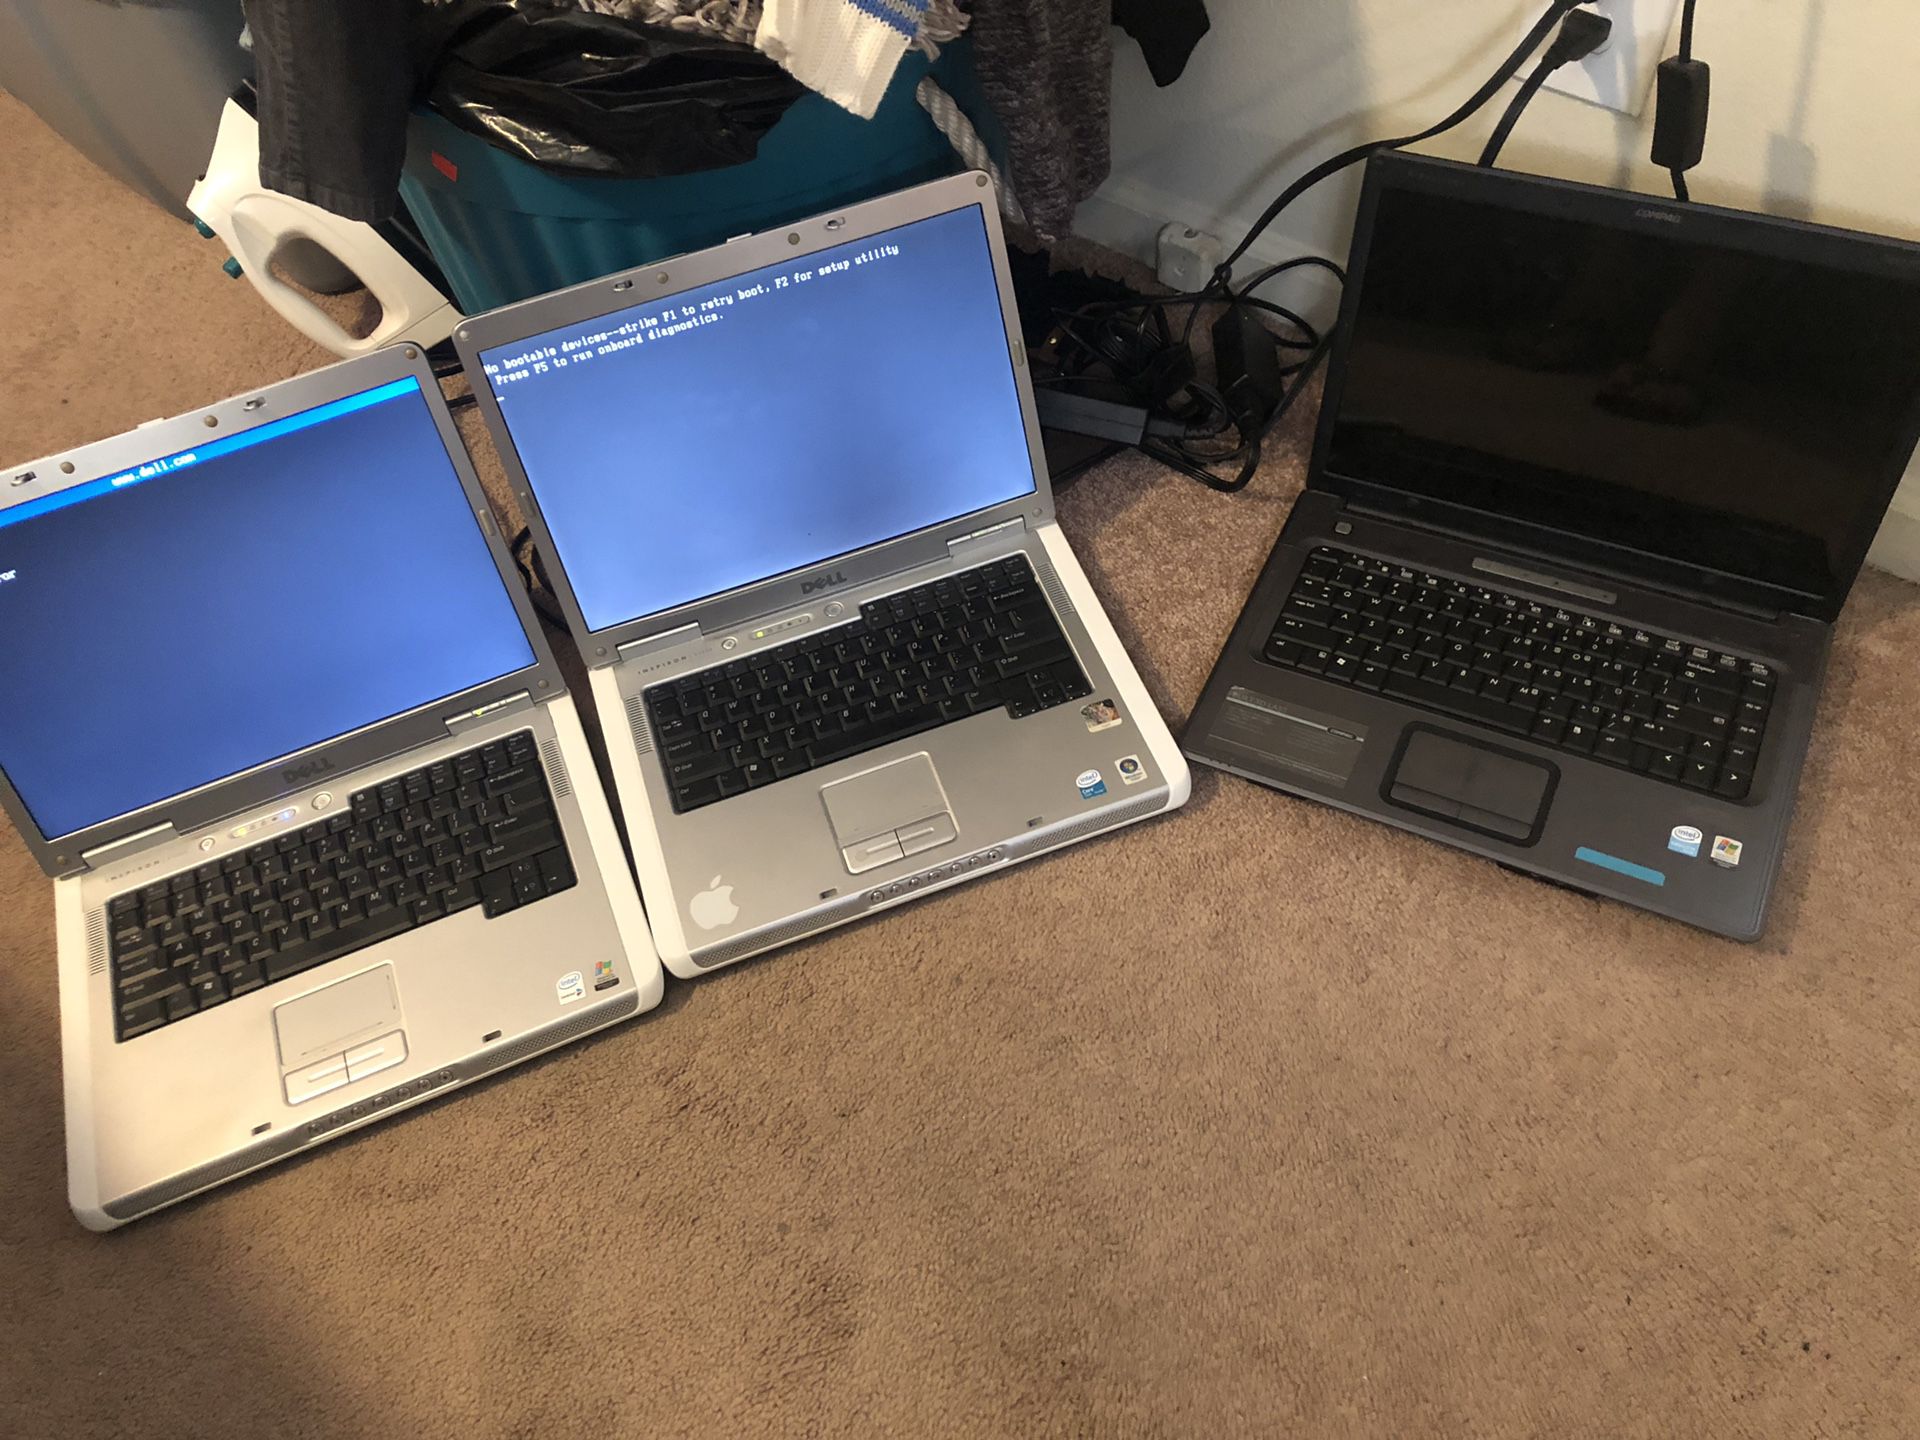 3 laptops Dell y Compaq $50 each one ☝️para repuestos o repararlas